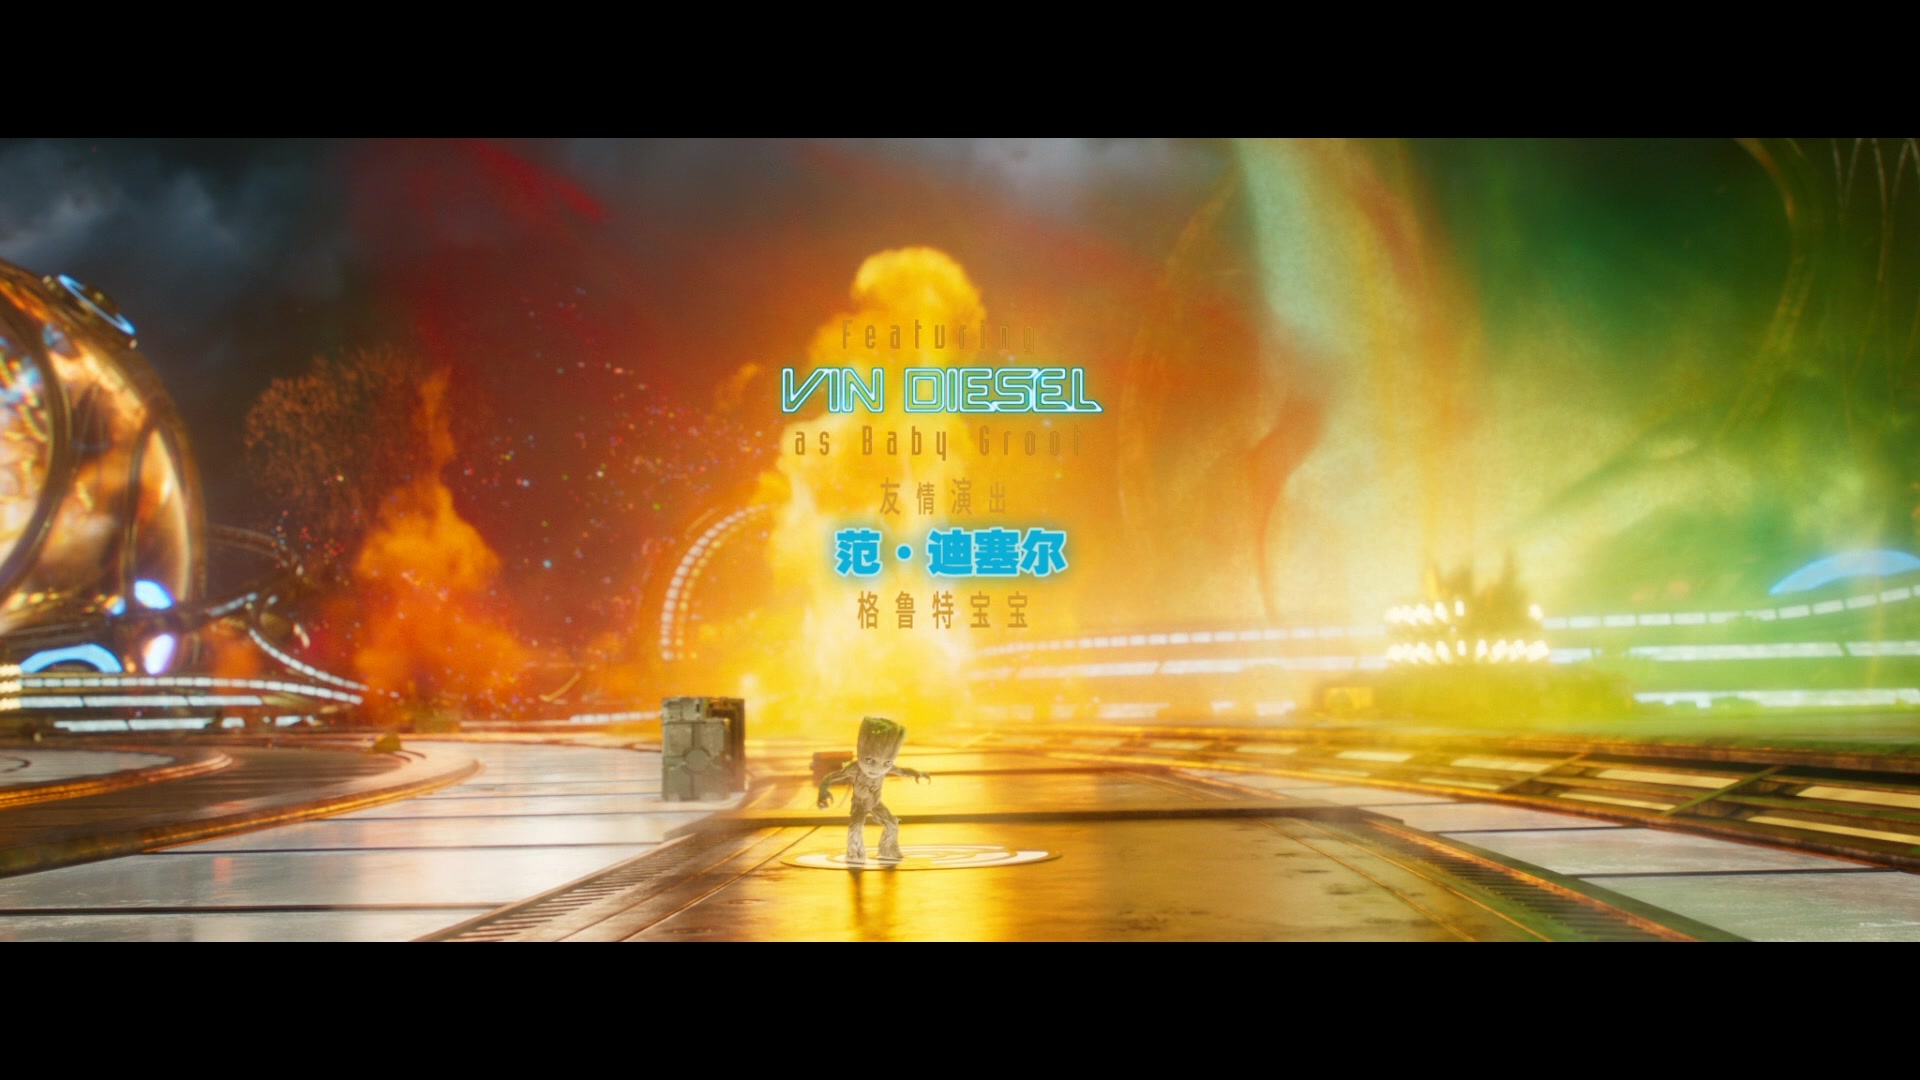 银河护卫队2【IMAX版3D原盘国语中字 DIY次世代国语/国配/双语/注释特效字幕】 Guardians of the Galaxy Vol 2 2017 1080p 3D IMAX Blu-ray DTS-HD MA 7.1-FiNalHD@HDSky [43.71 GB]-8.jpg